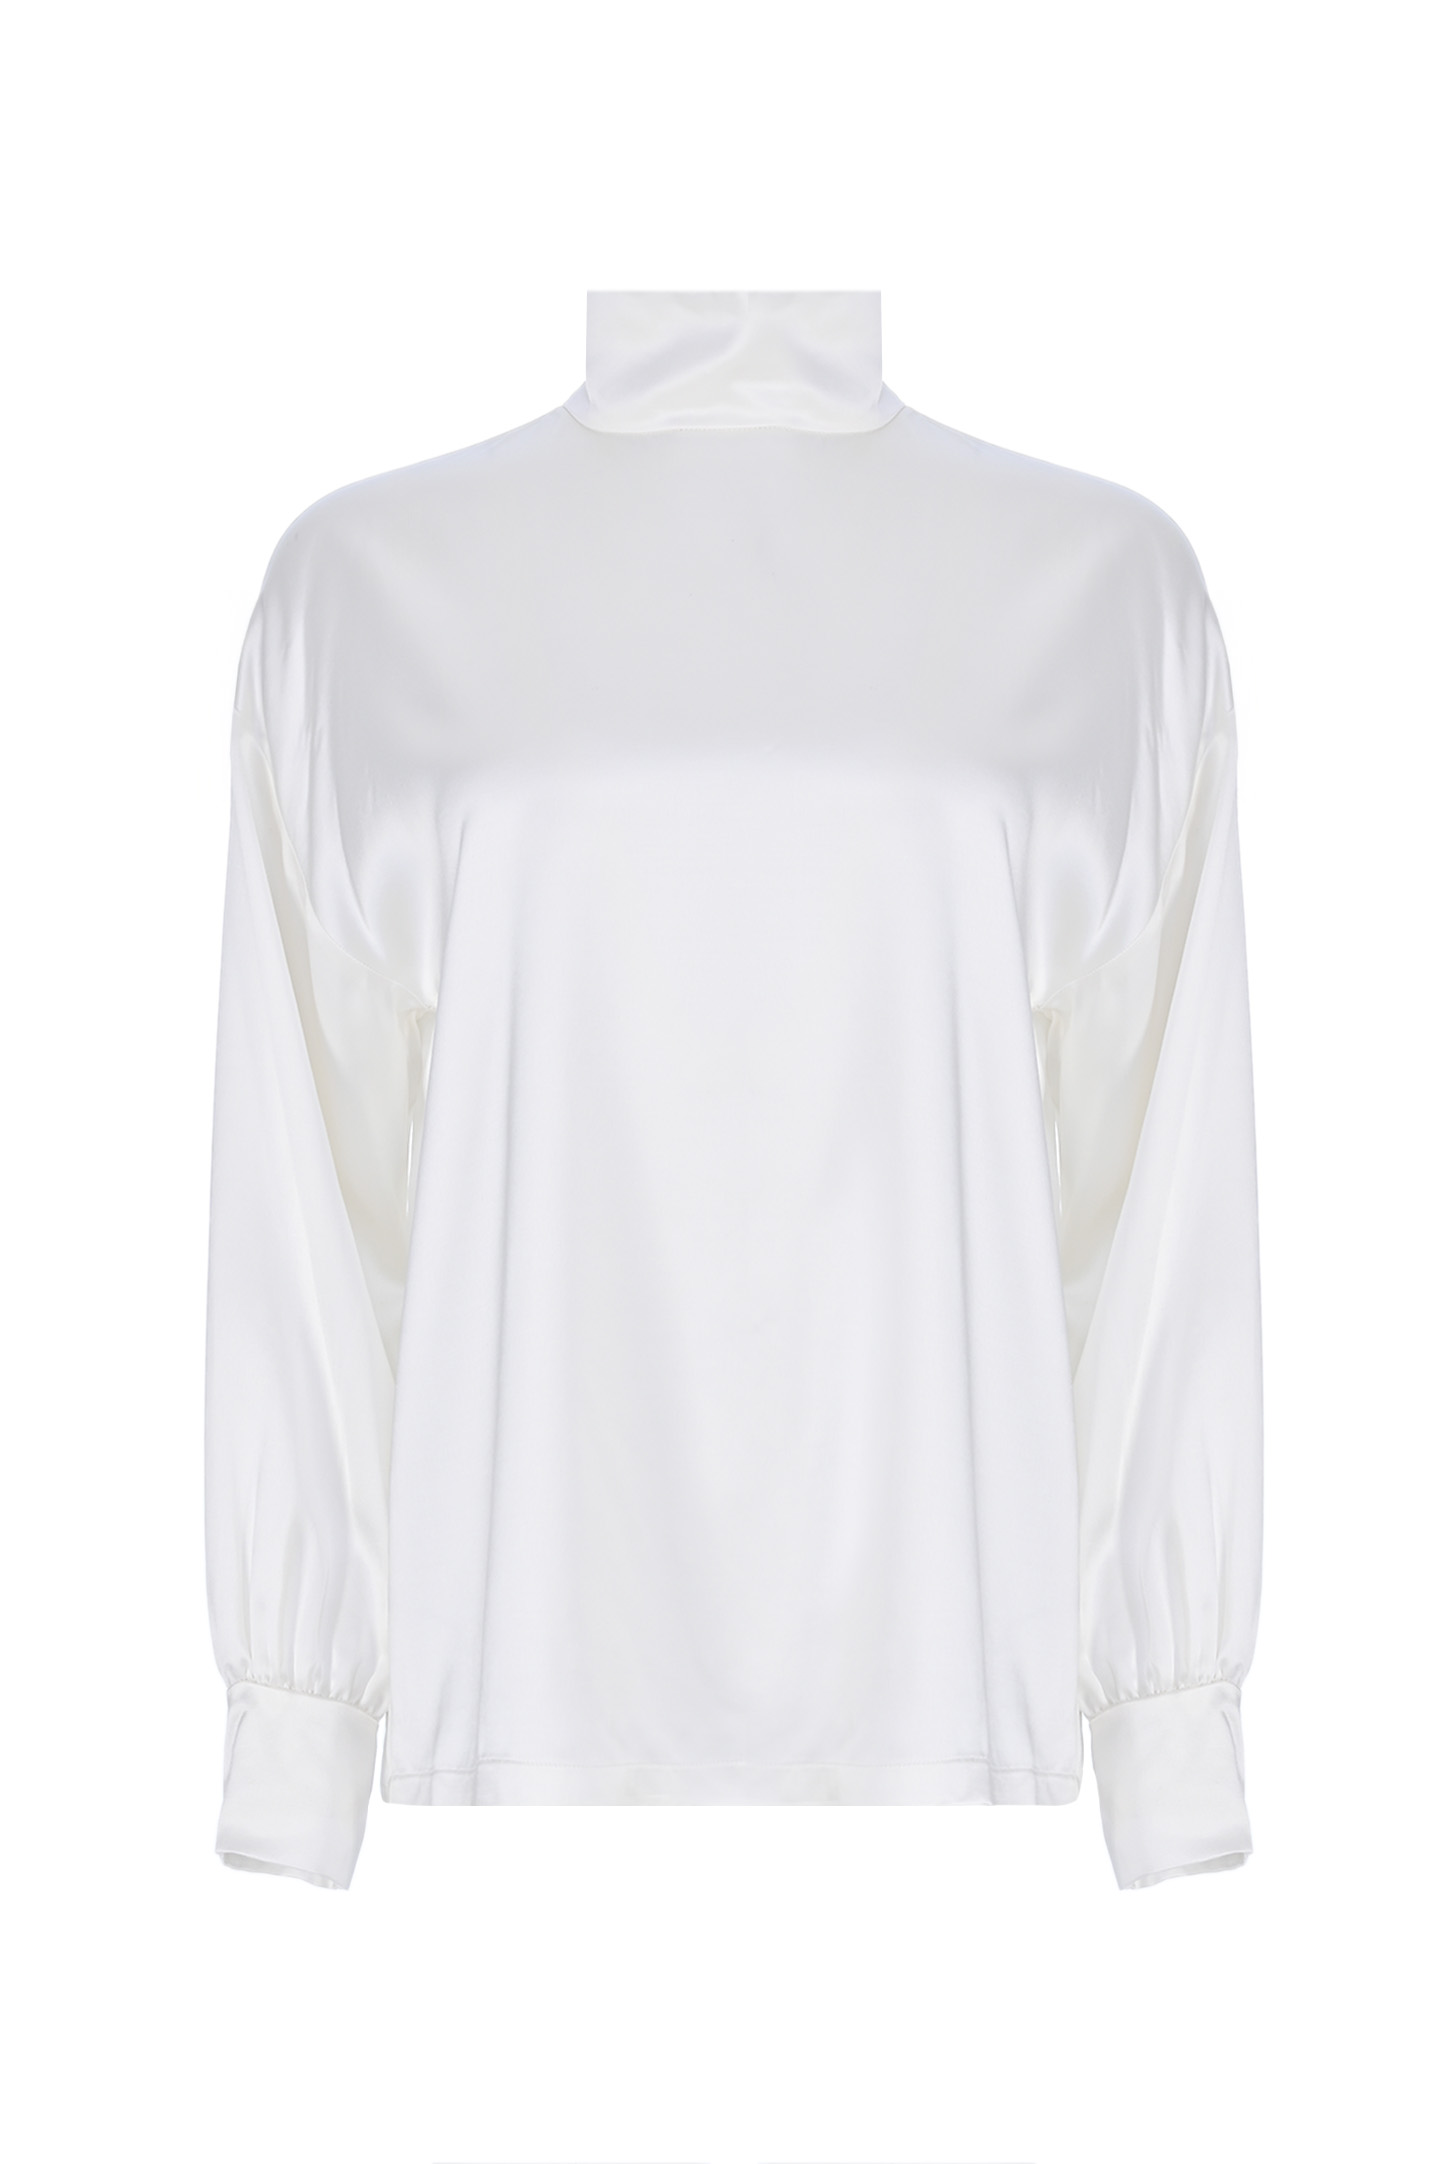 Блуза FABIANA FILIPPI TPD223F605, цвет: Белый, Женский